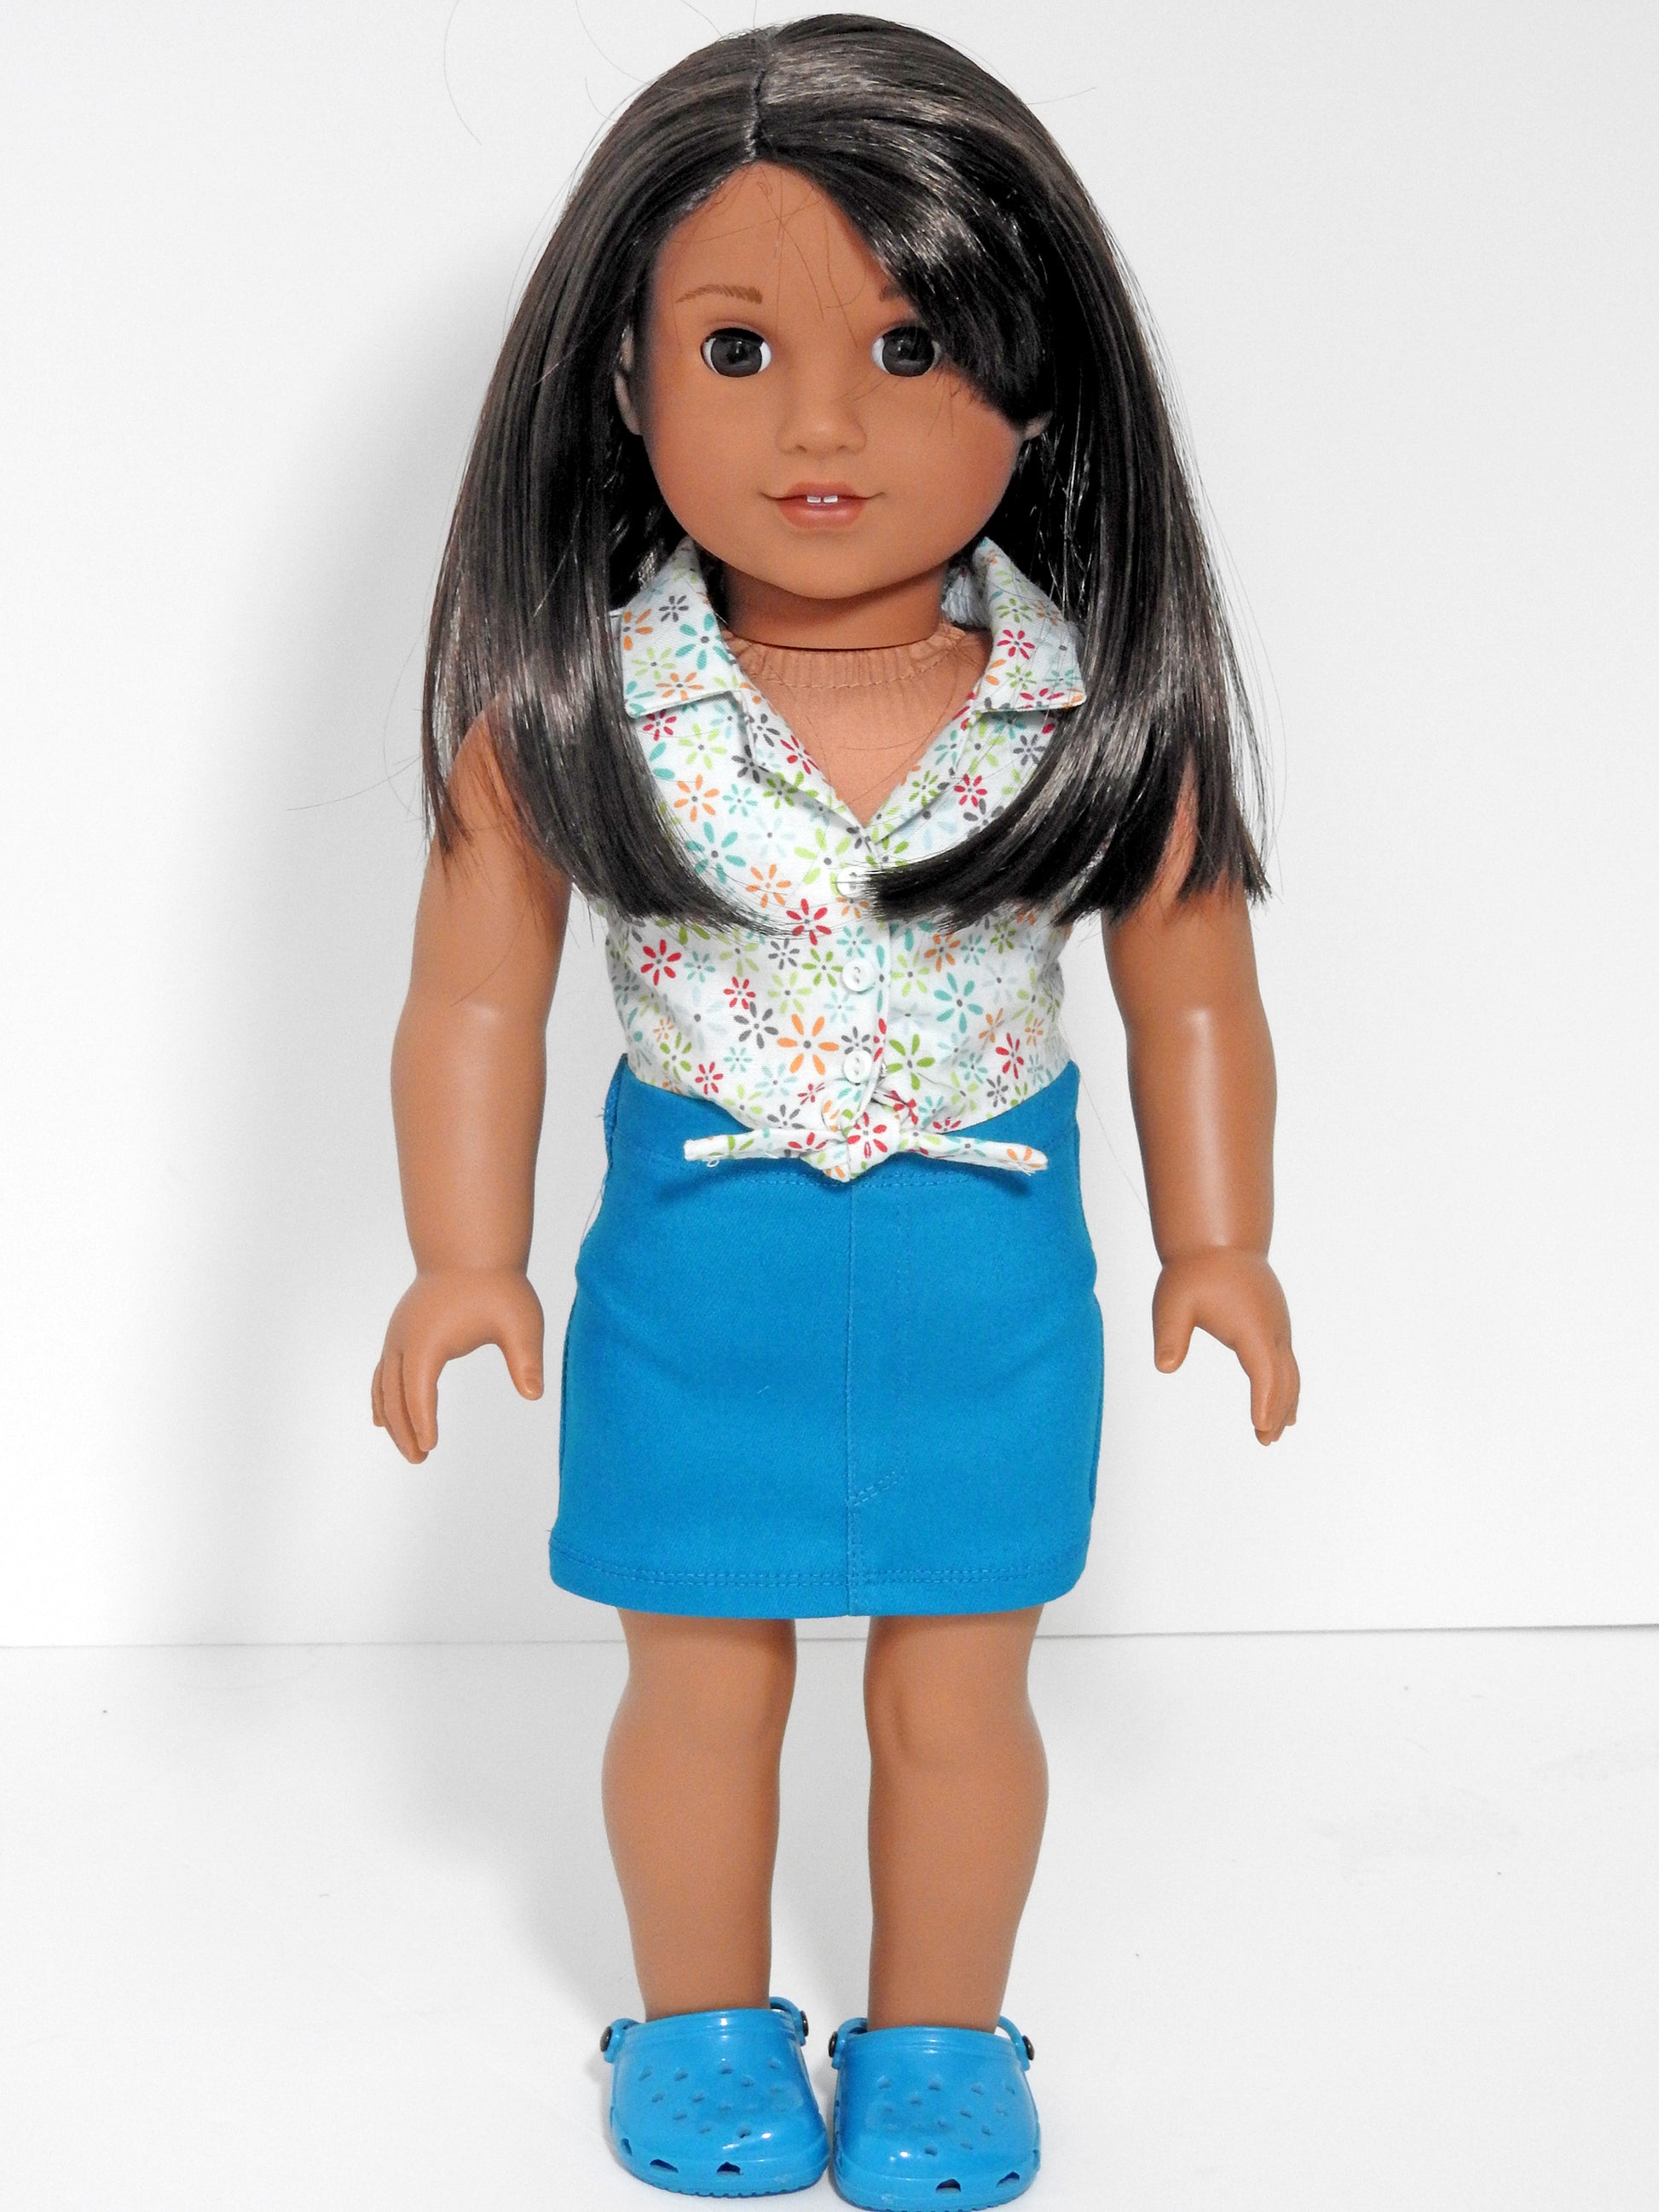 Handmade American Girl Doll Denim Mini Skirt and Tie Blouse – Avanna Girl